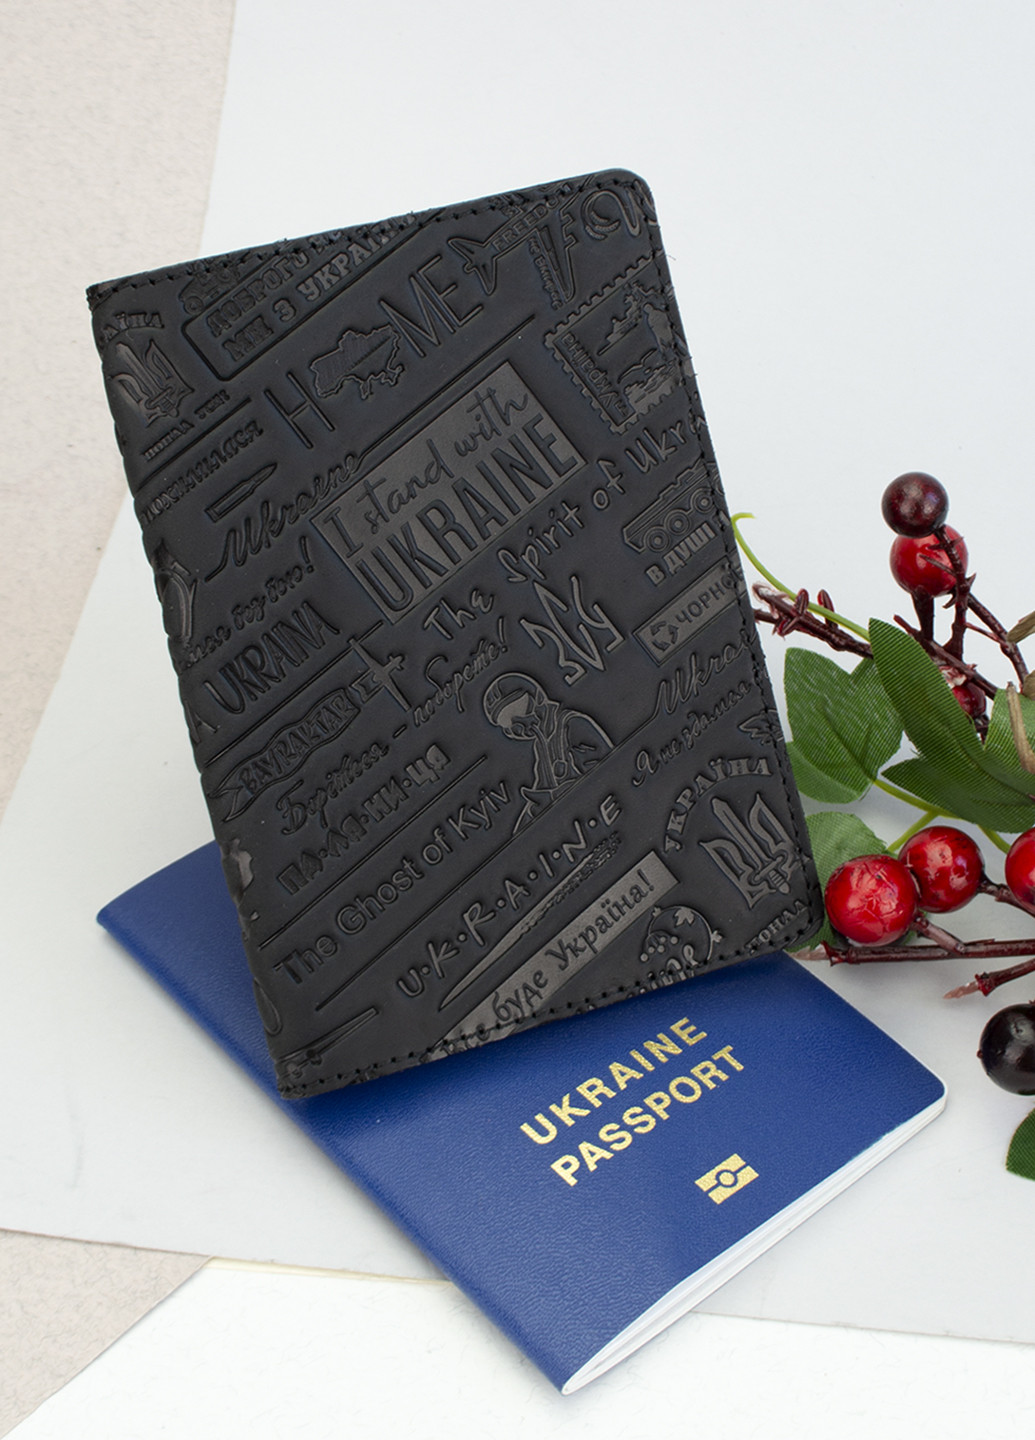 Подарочный мужской набор №60 "Ukraine" (черный) в коробке: обложка на паспорт + права HandyCover (253516318)